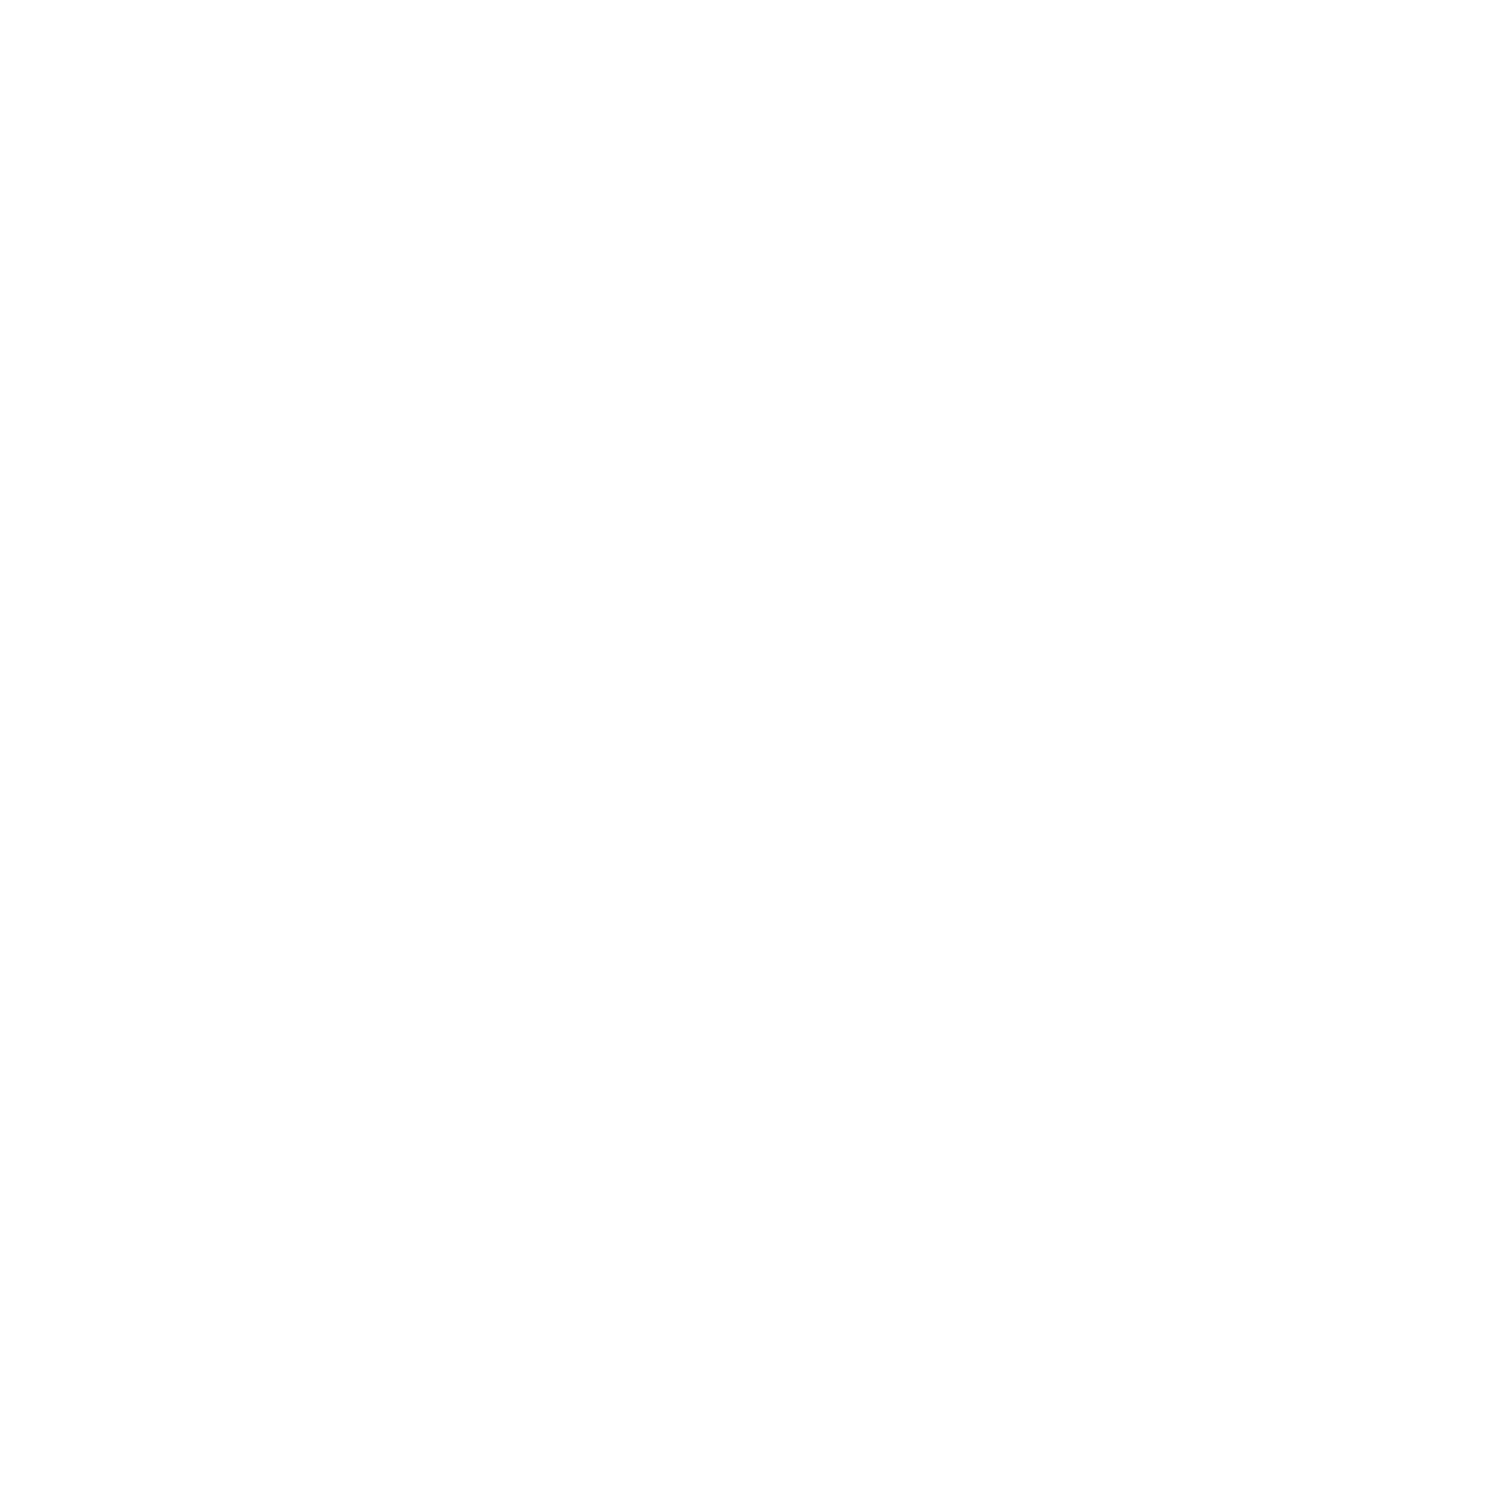 Kulturo Media